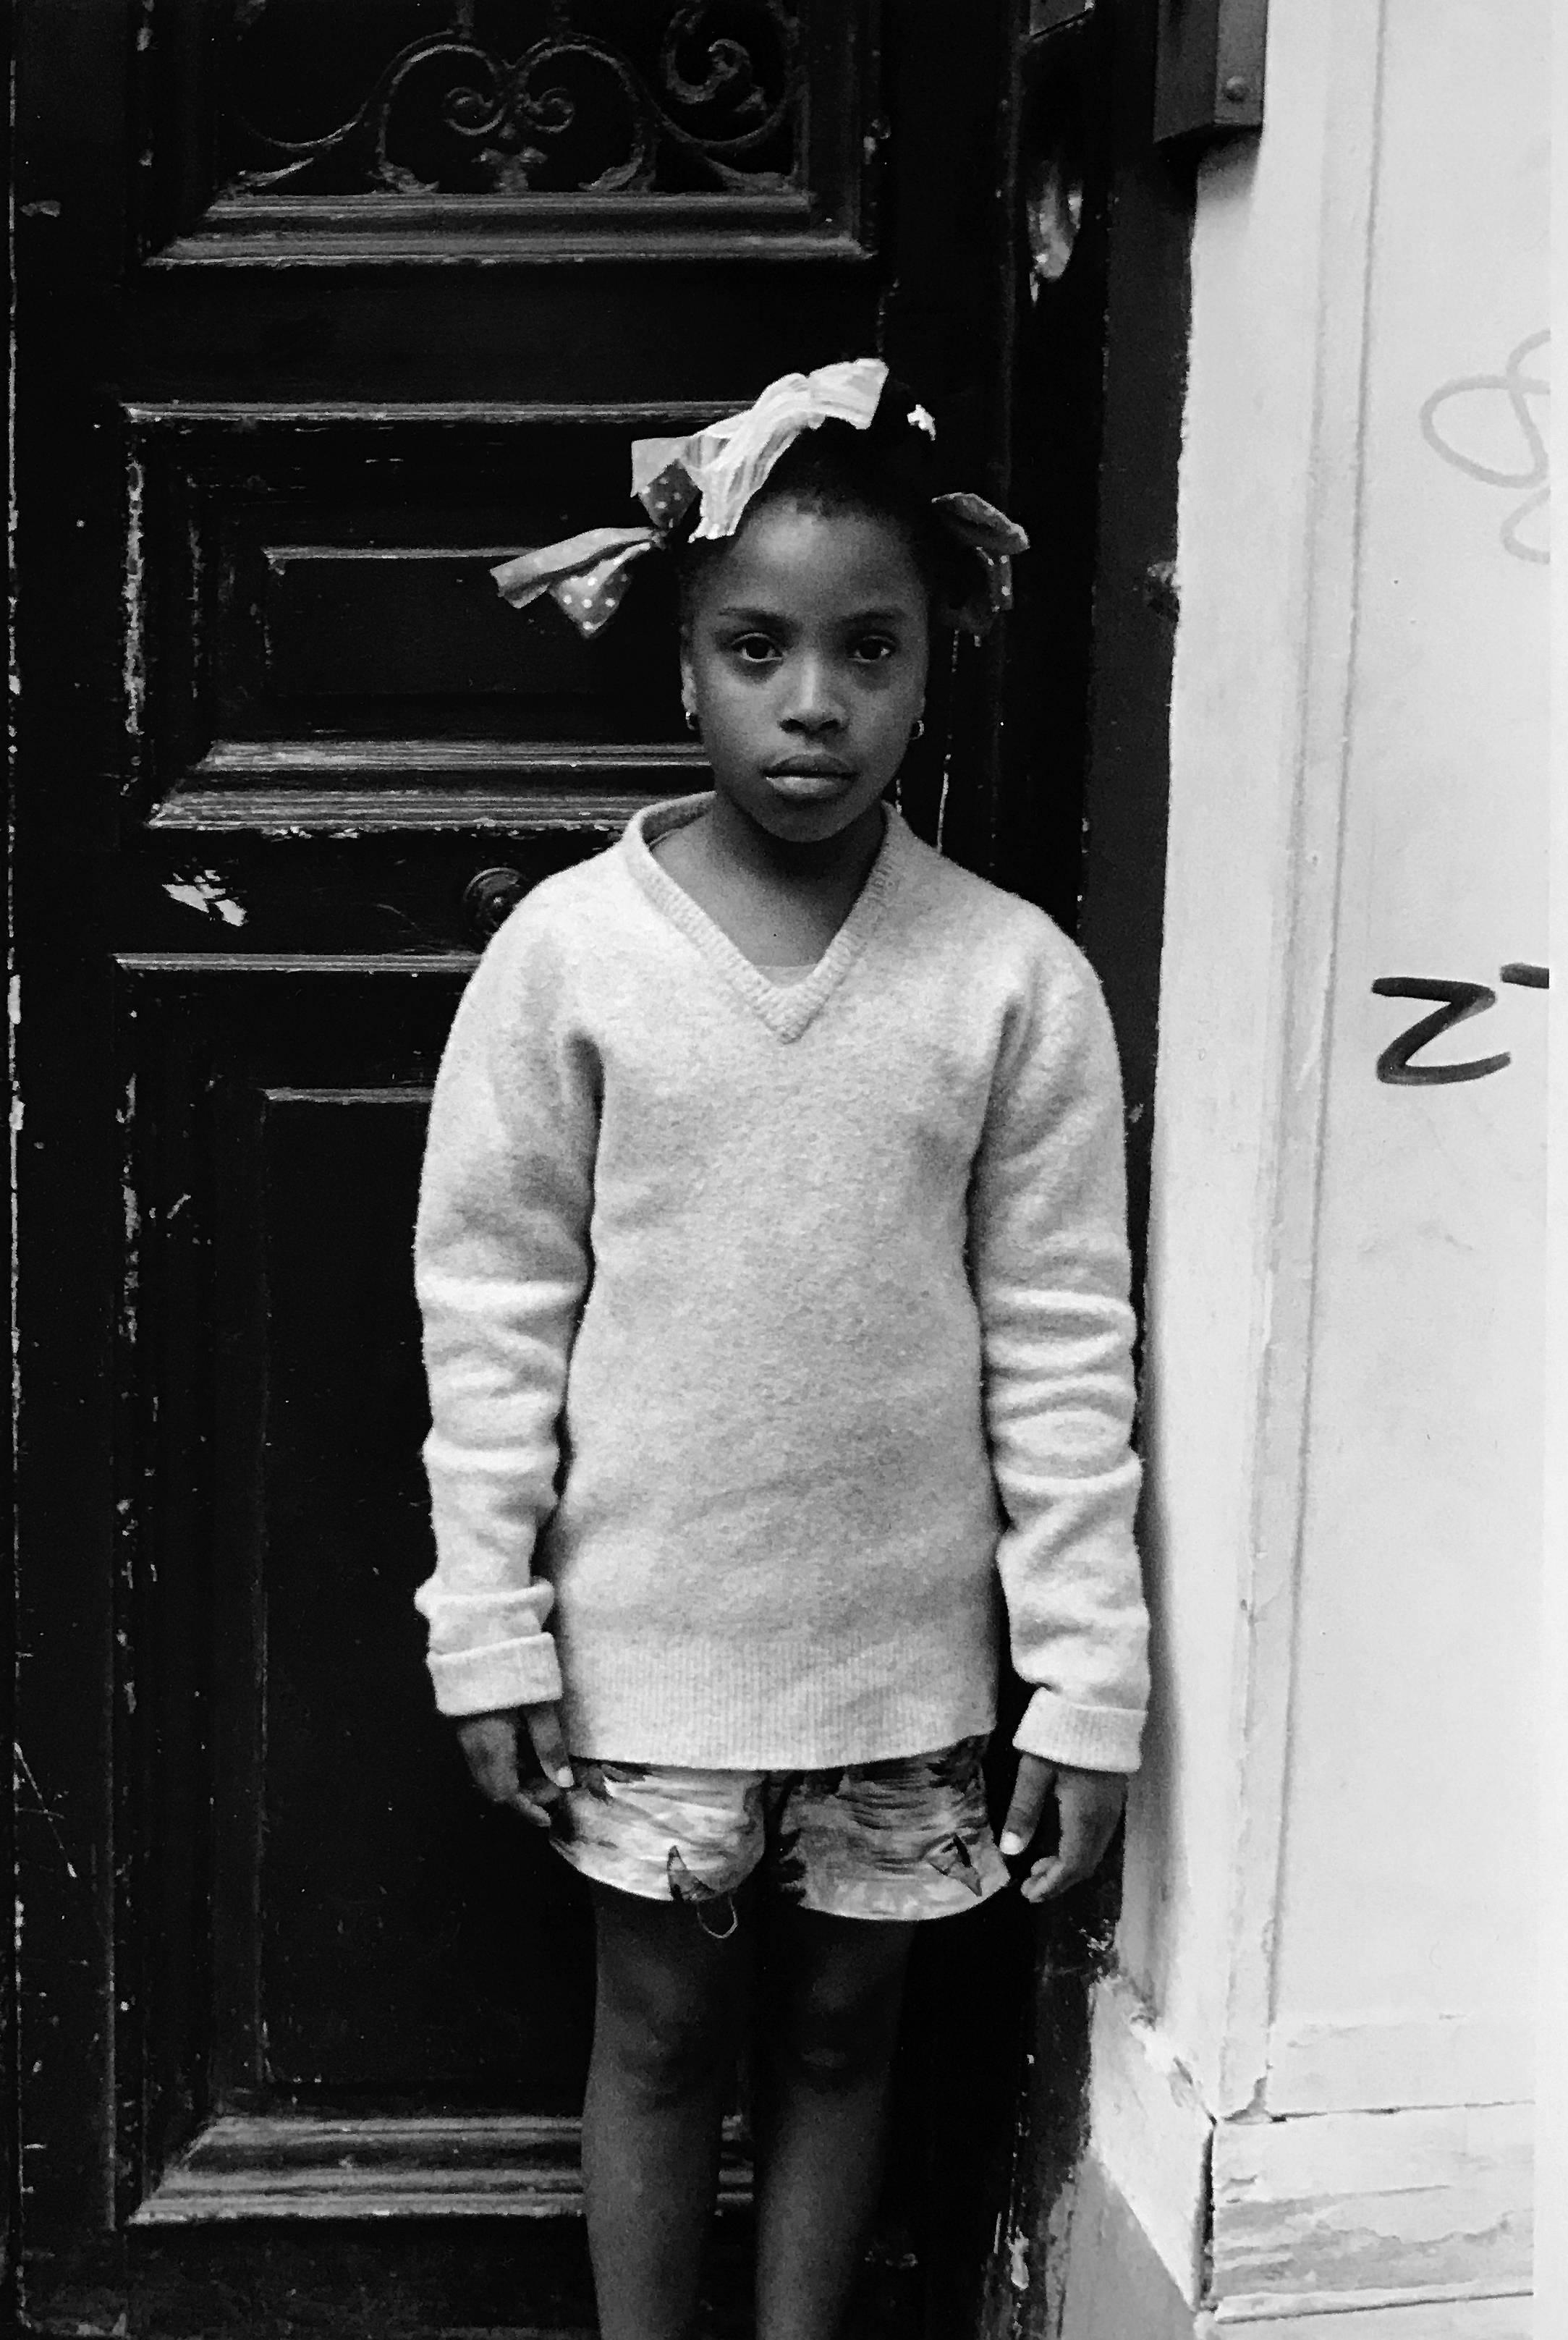 Bows, Street Photography Child Portrait Paris, France 1980s